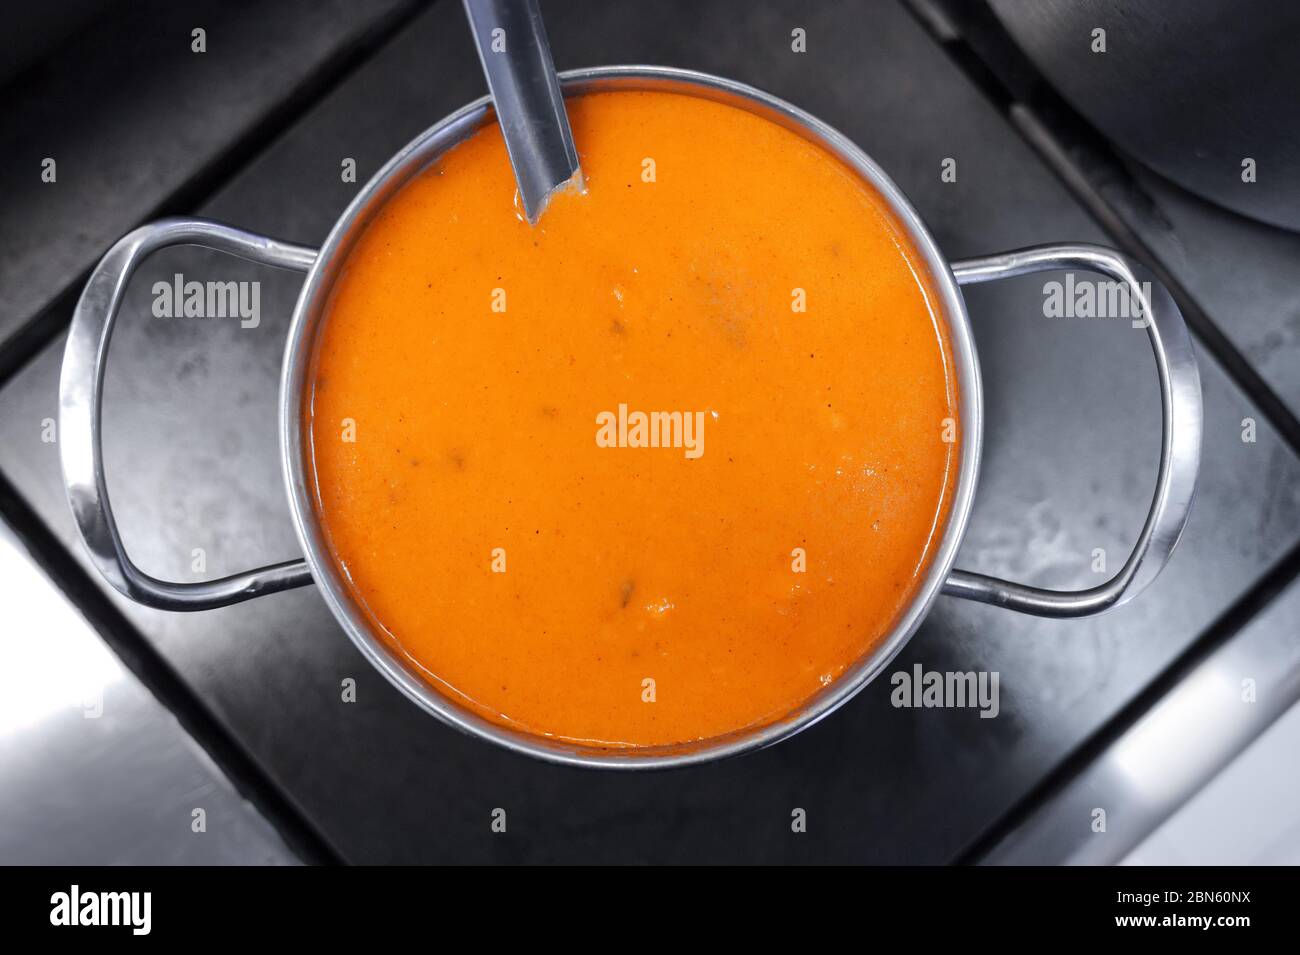 Soupe épaisse jaune dans une casserole en métal sur la cuisinière. Style et minimalisme dans le design de la cuisine. Banque D'Images